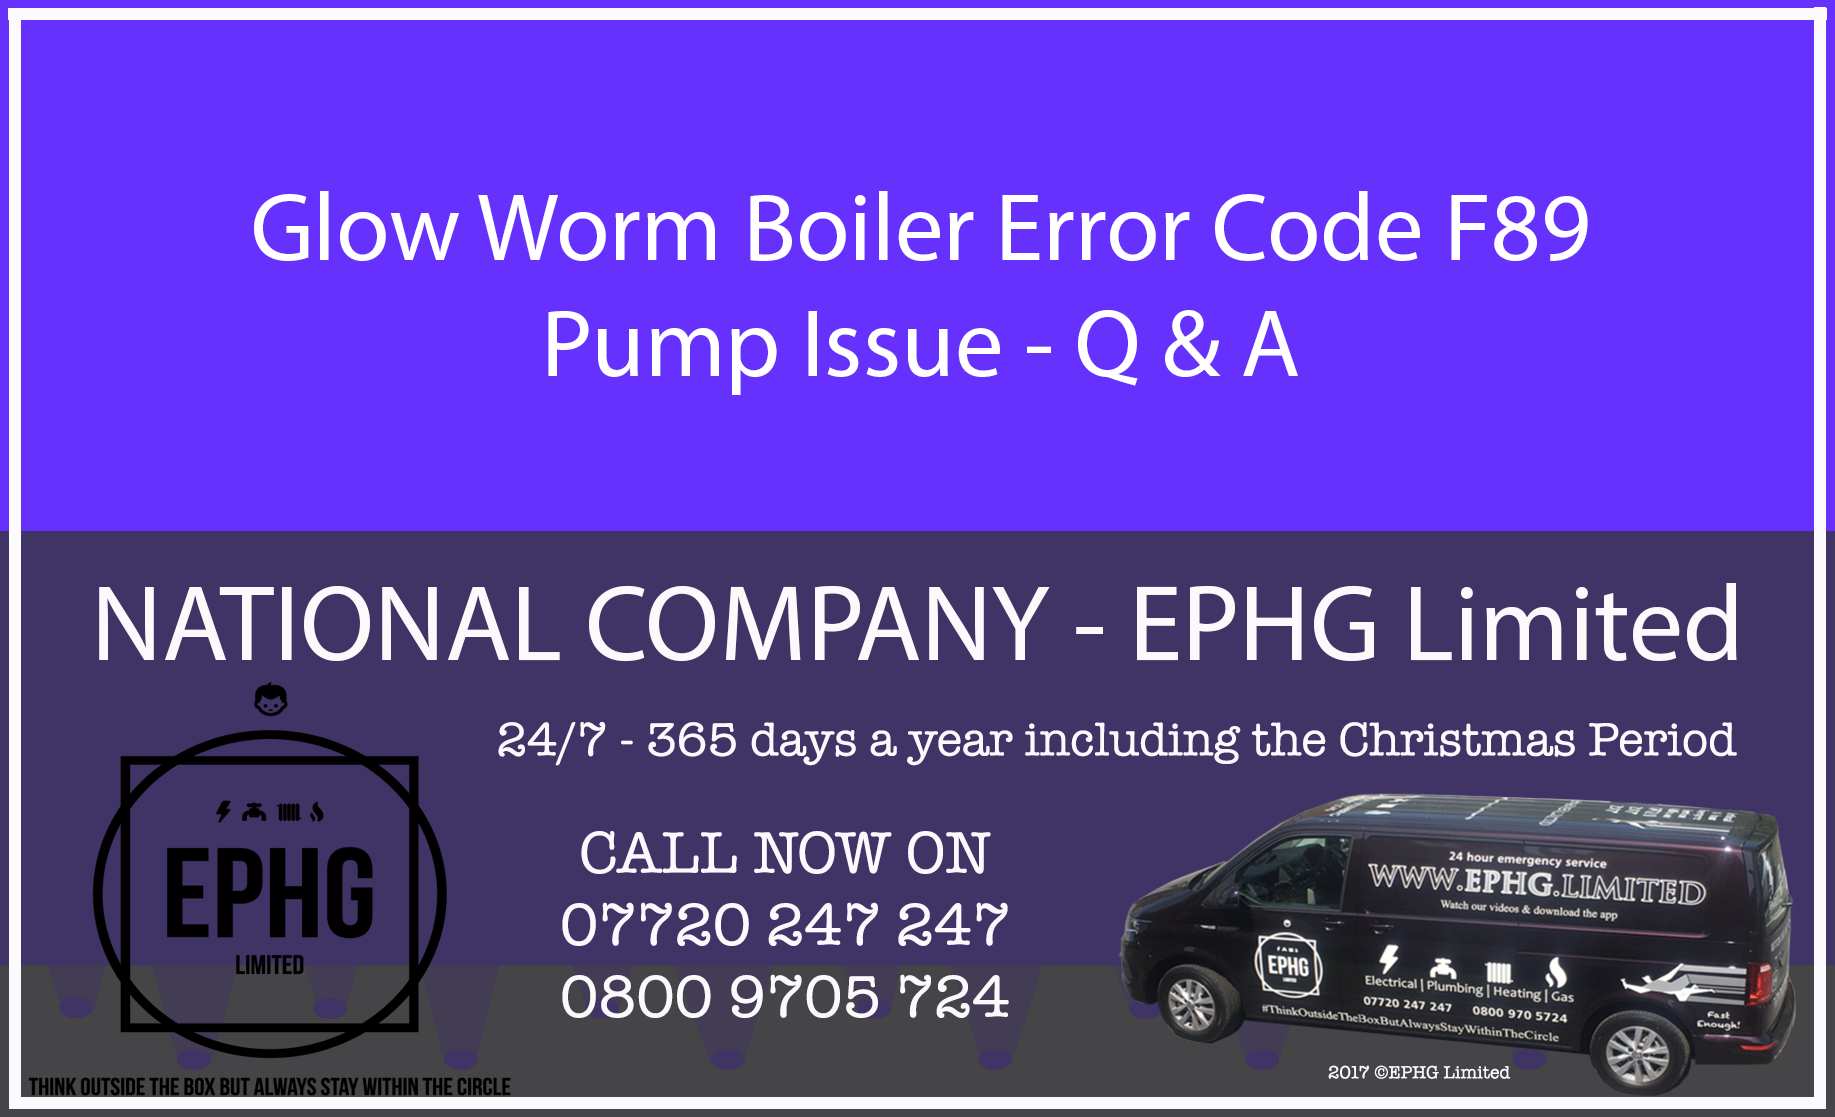 Glow-Worm boiler error code F.89